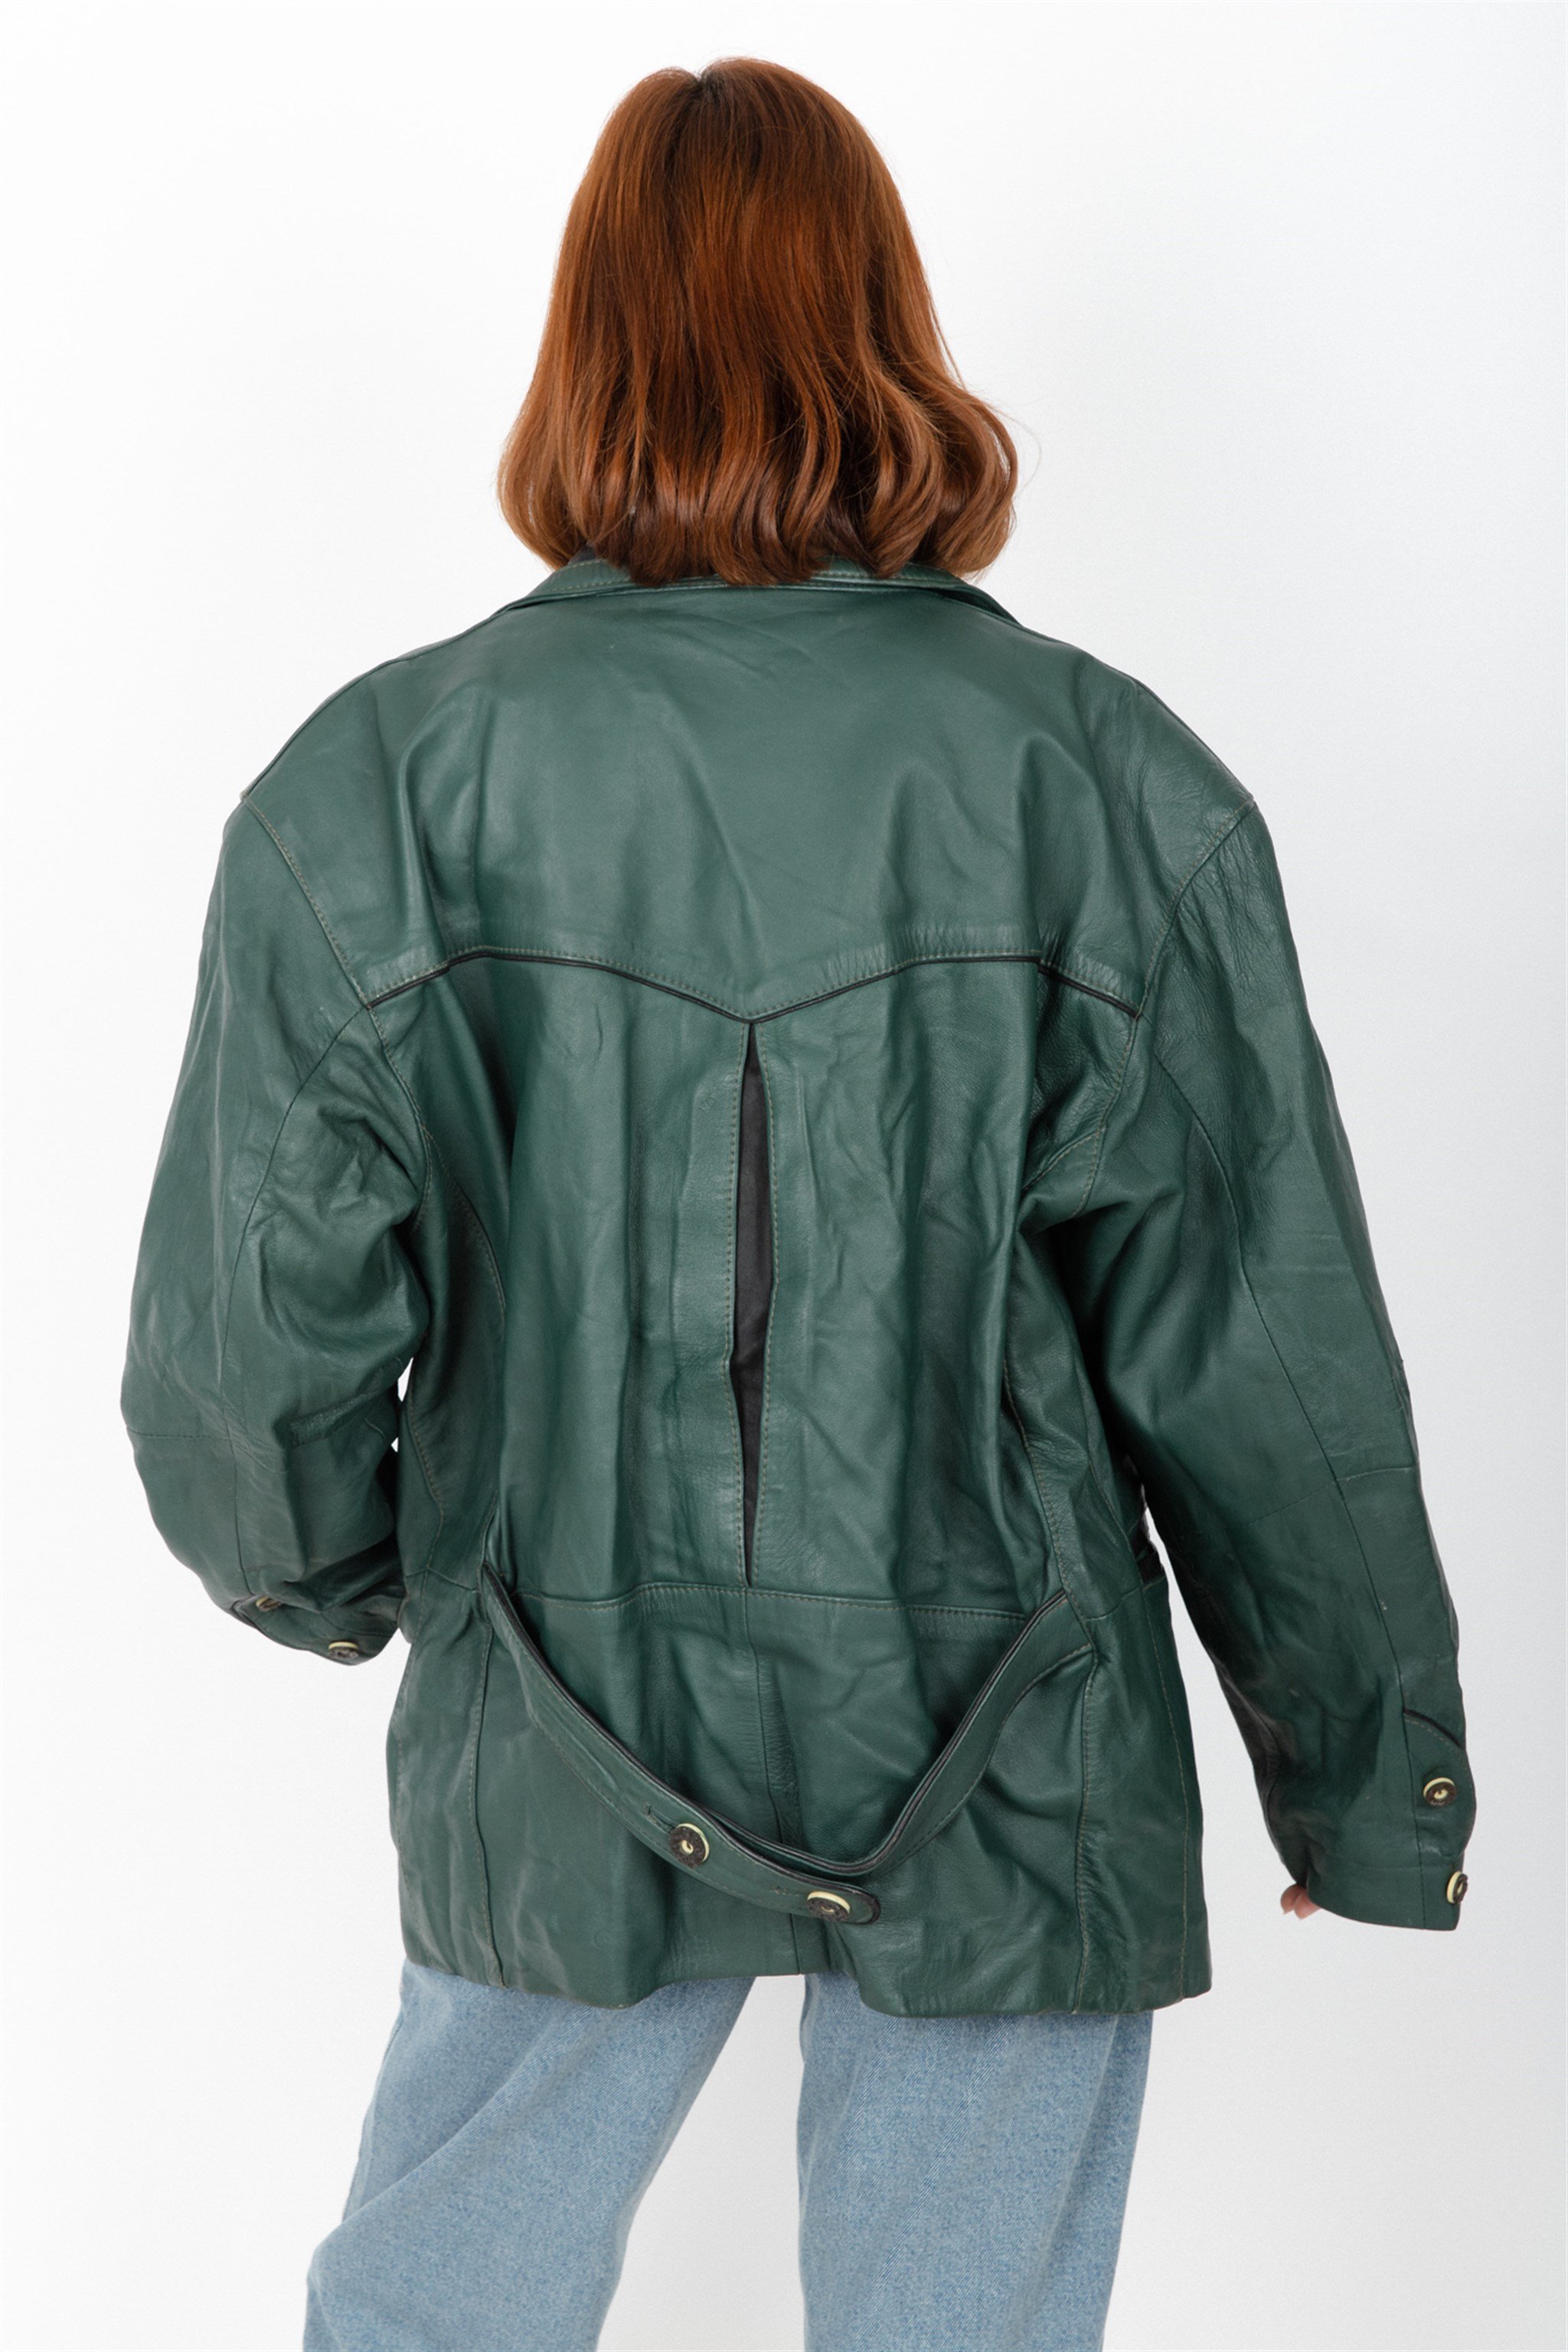 Vintage Unisex Green Bavyera Leather Jacket